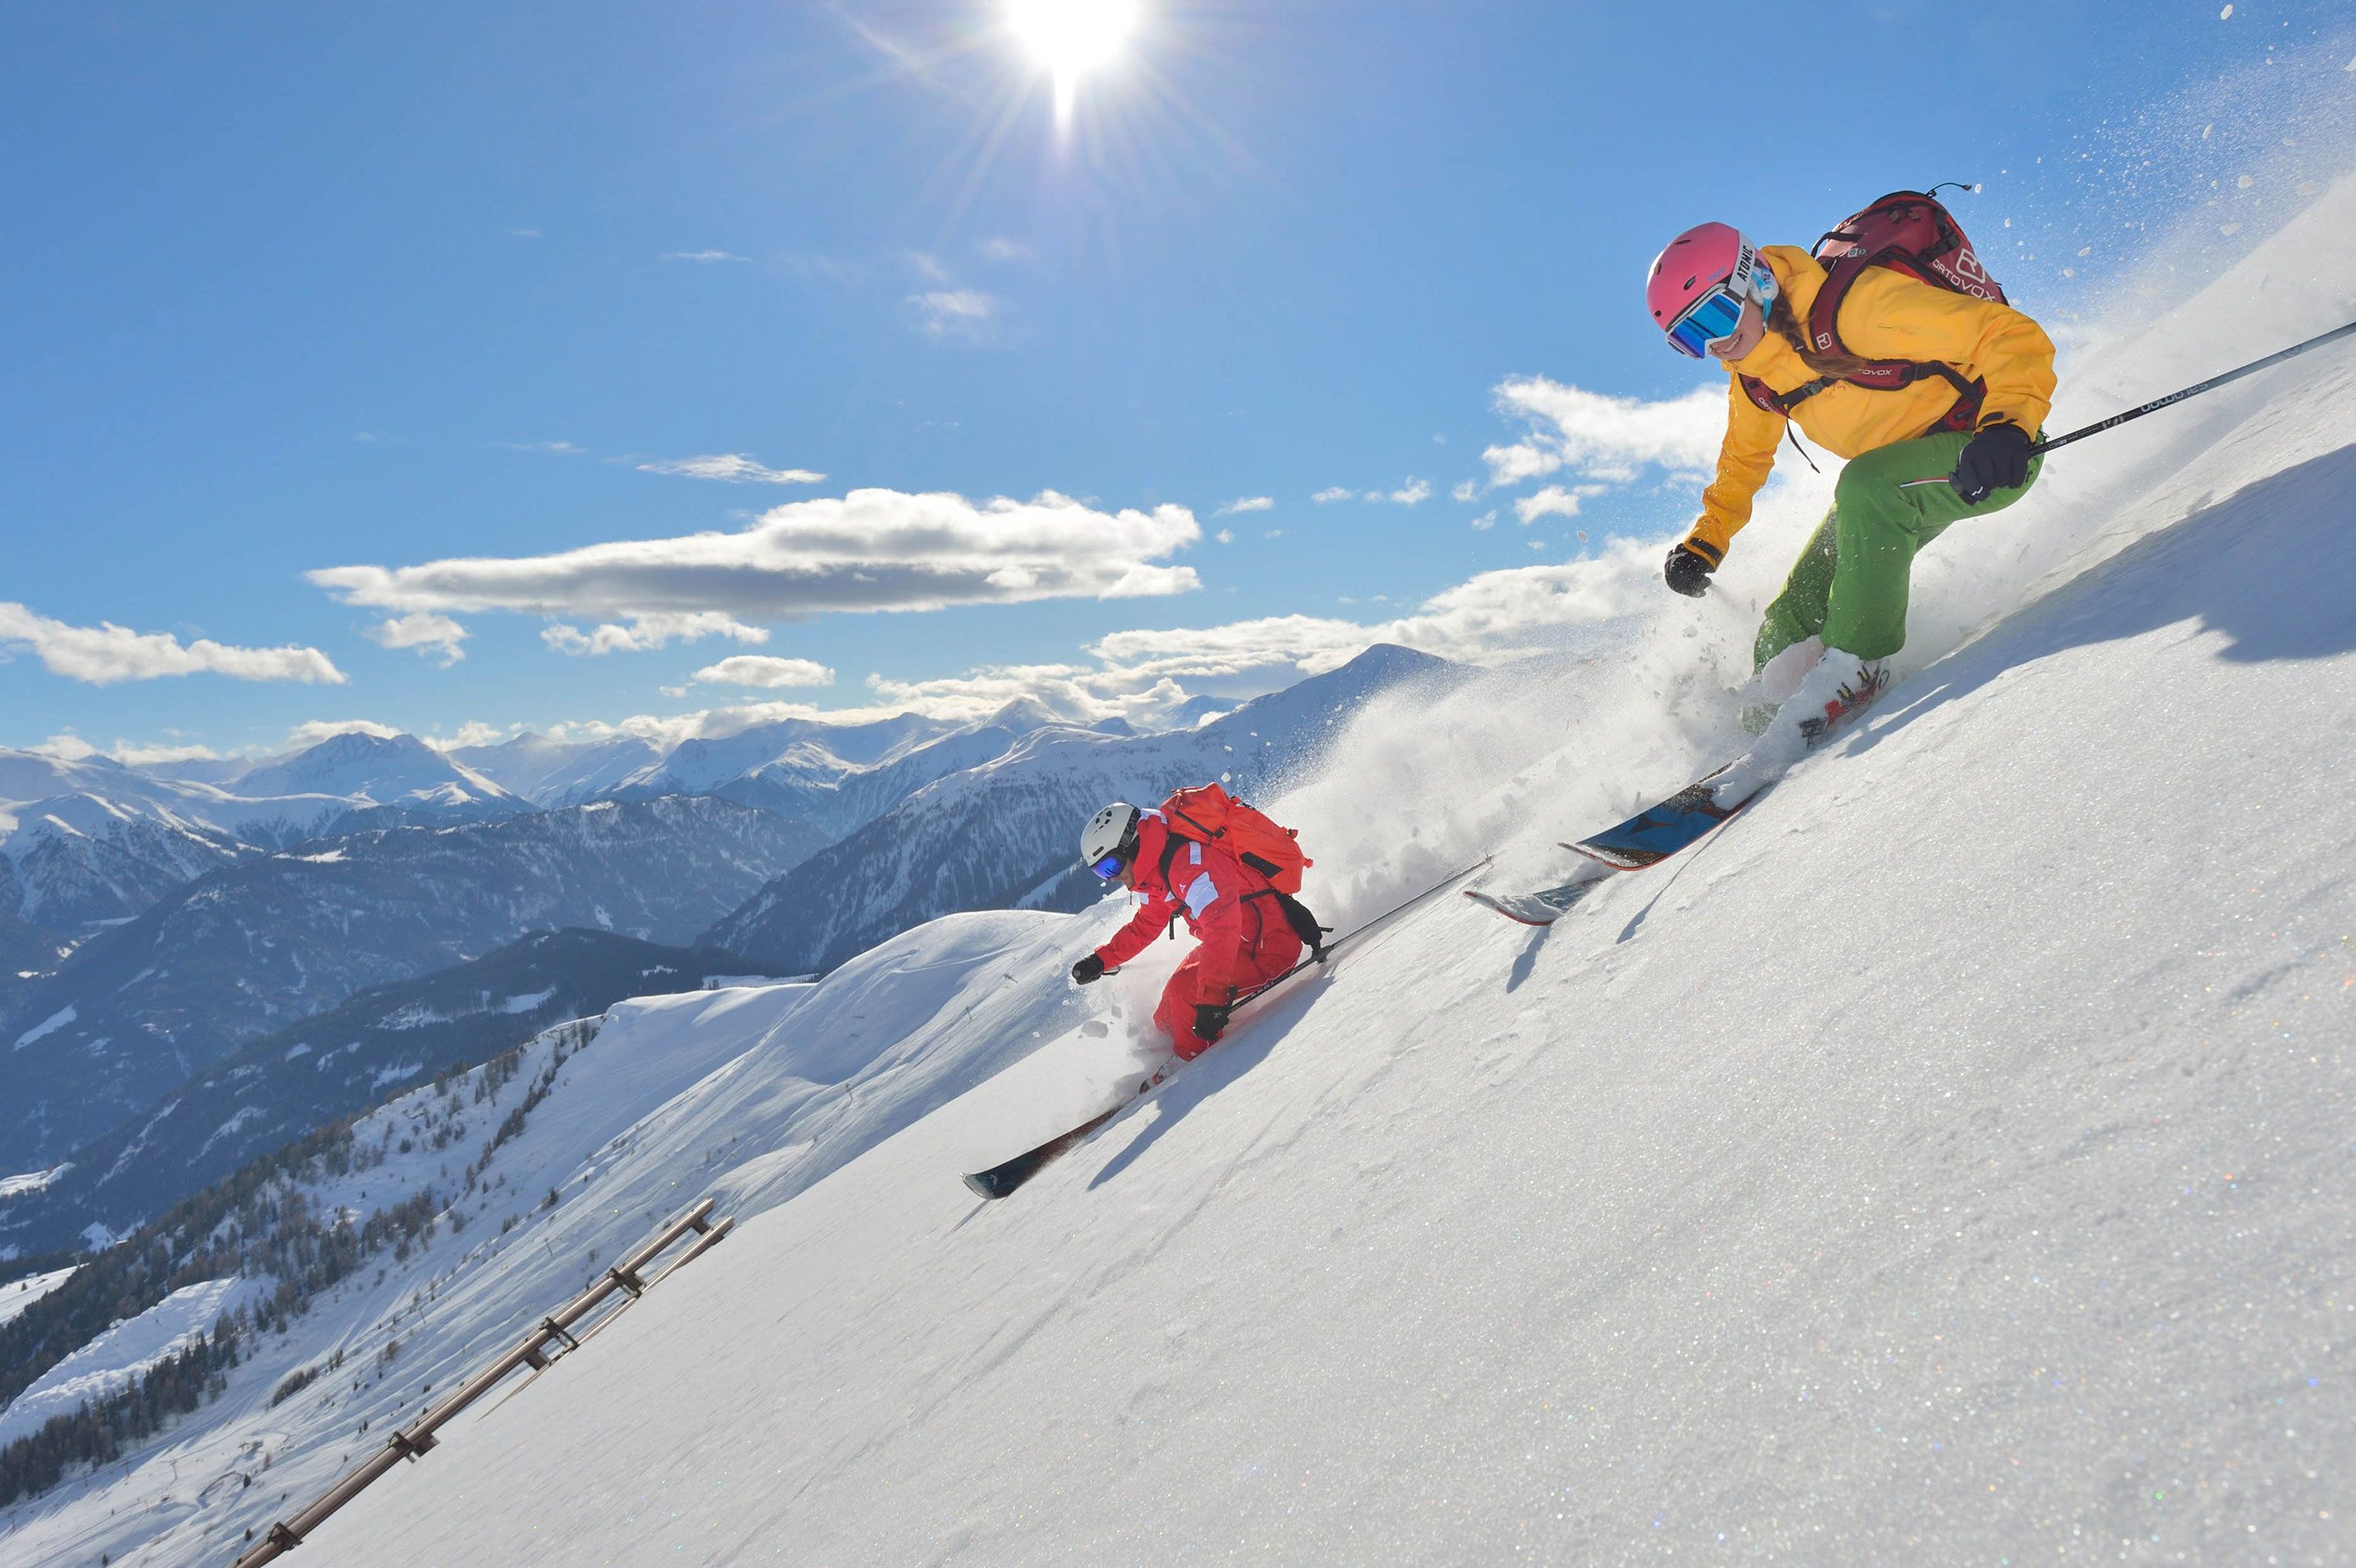 Meer actie! Freeride les met de skischool! (foto: Sepp-Mallaun)